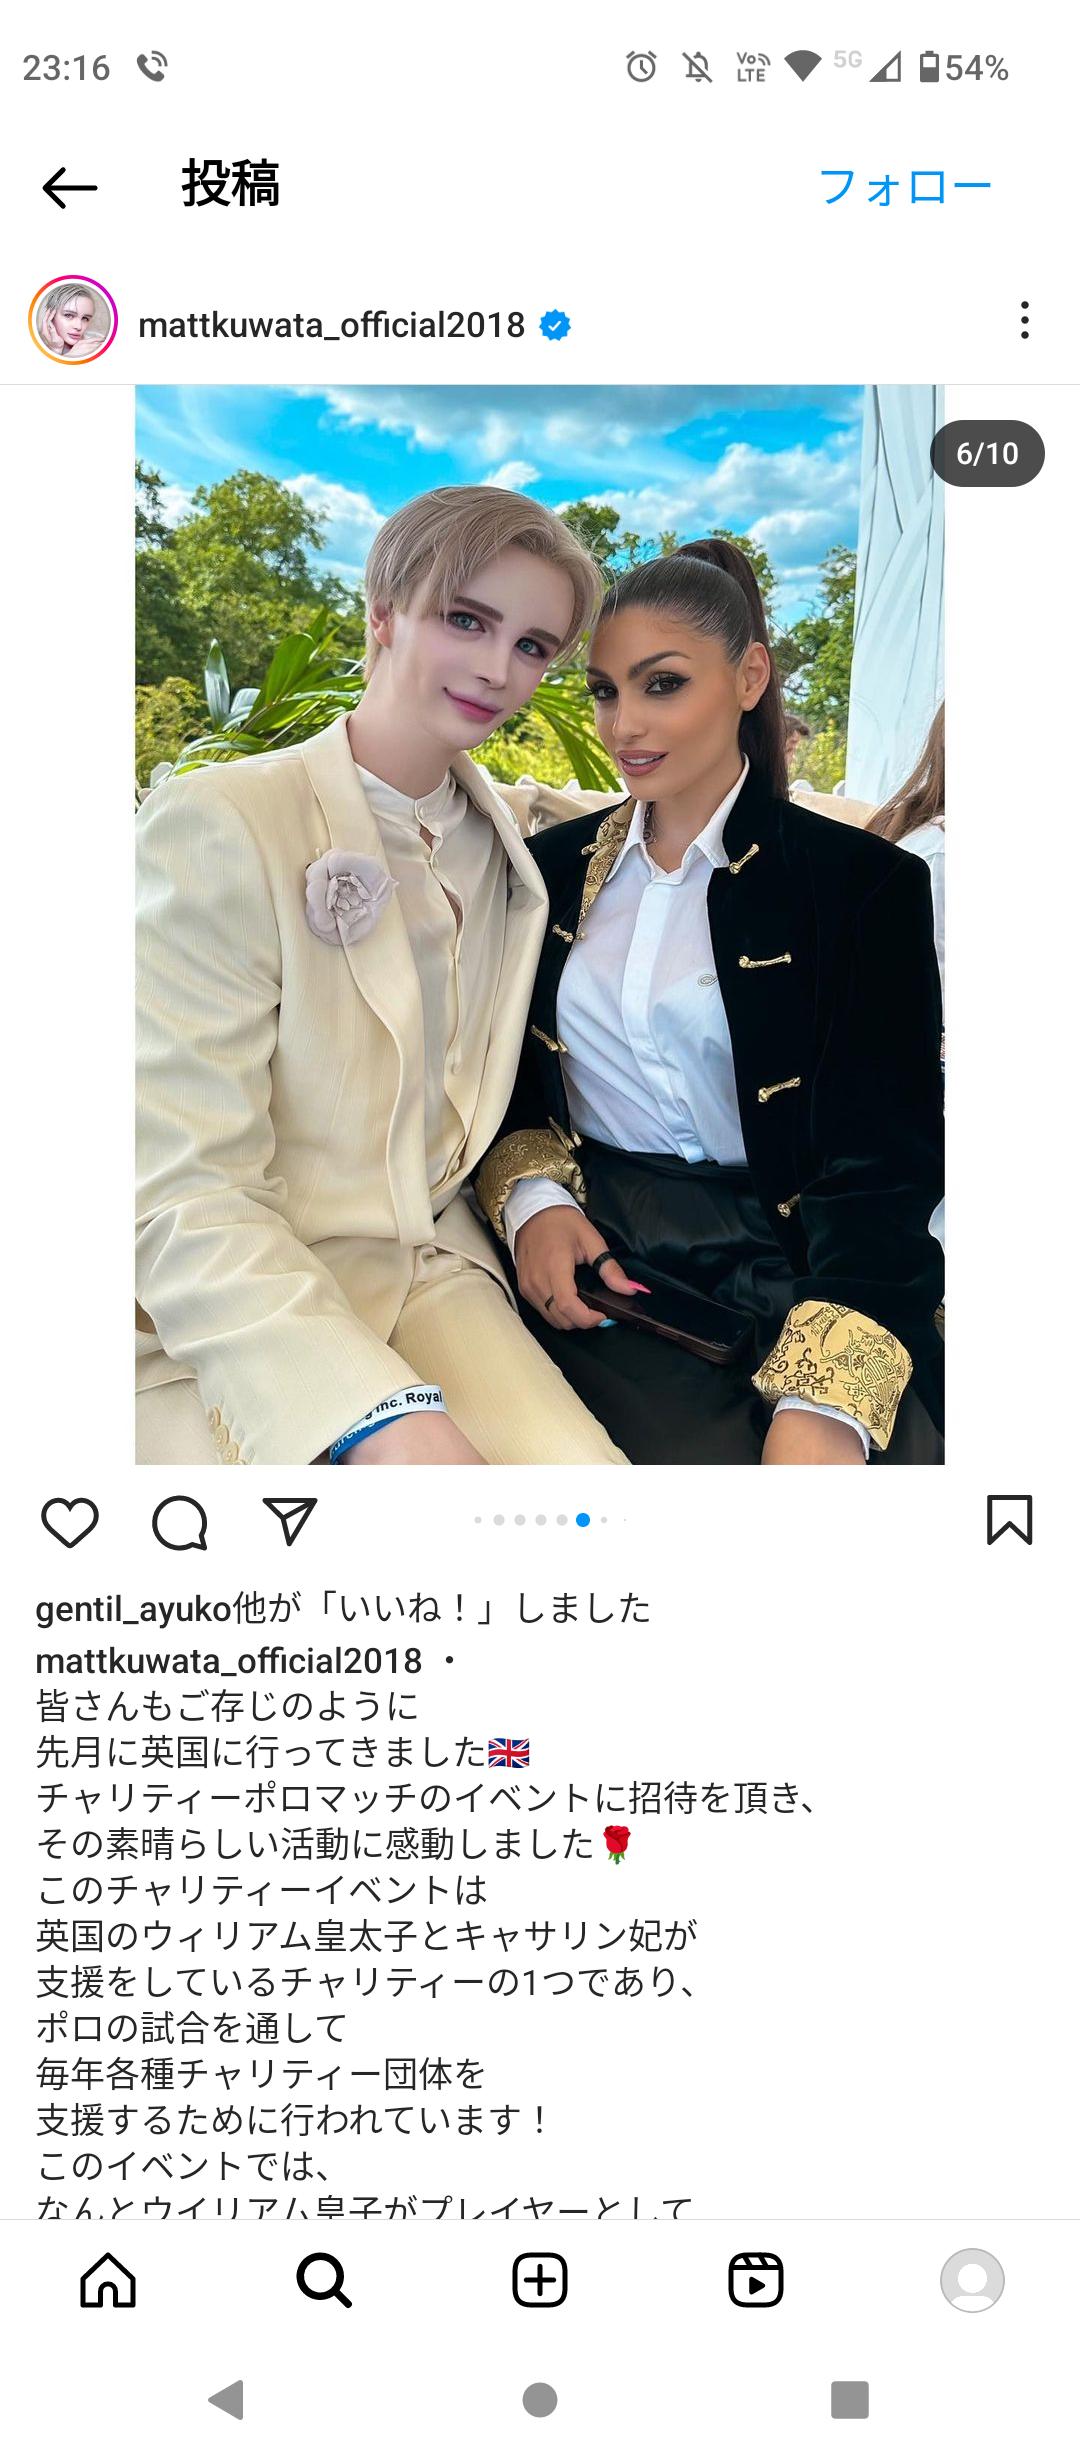 桑田matt、何故か急にイギリスでウィリアム皇太子とメーガン妃に会いに行き写真撮影 本物の白人に格の違いを見せつける  [884040186]\n_1